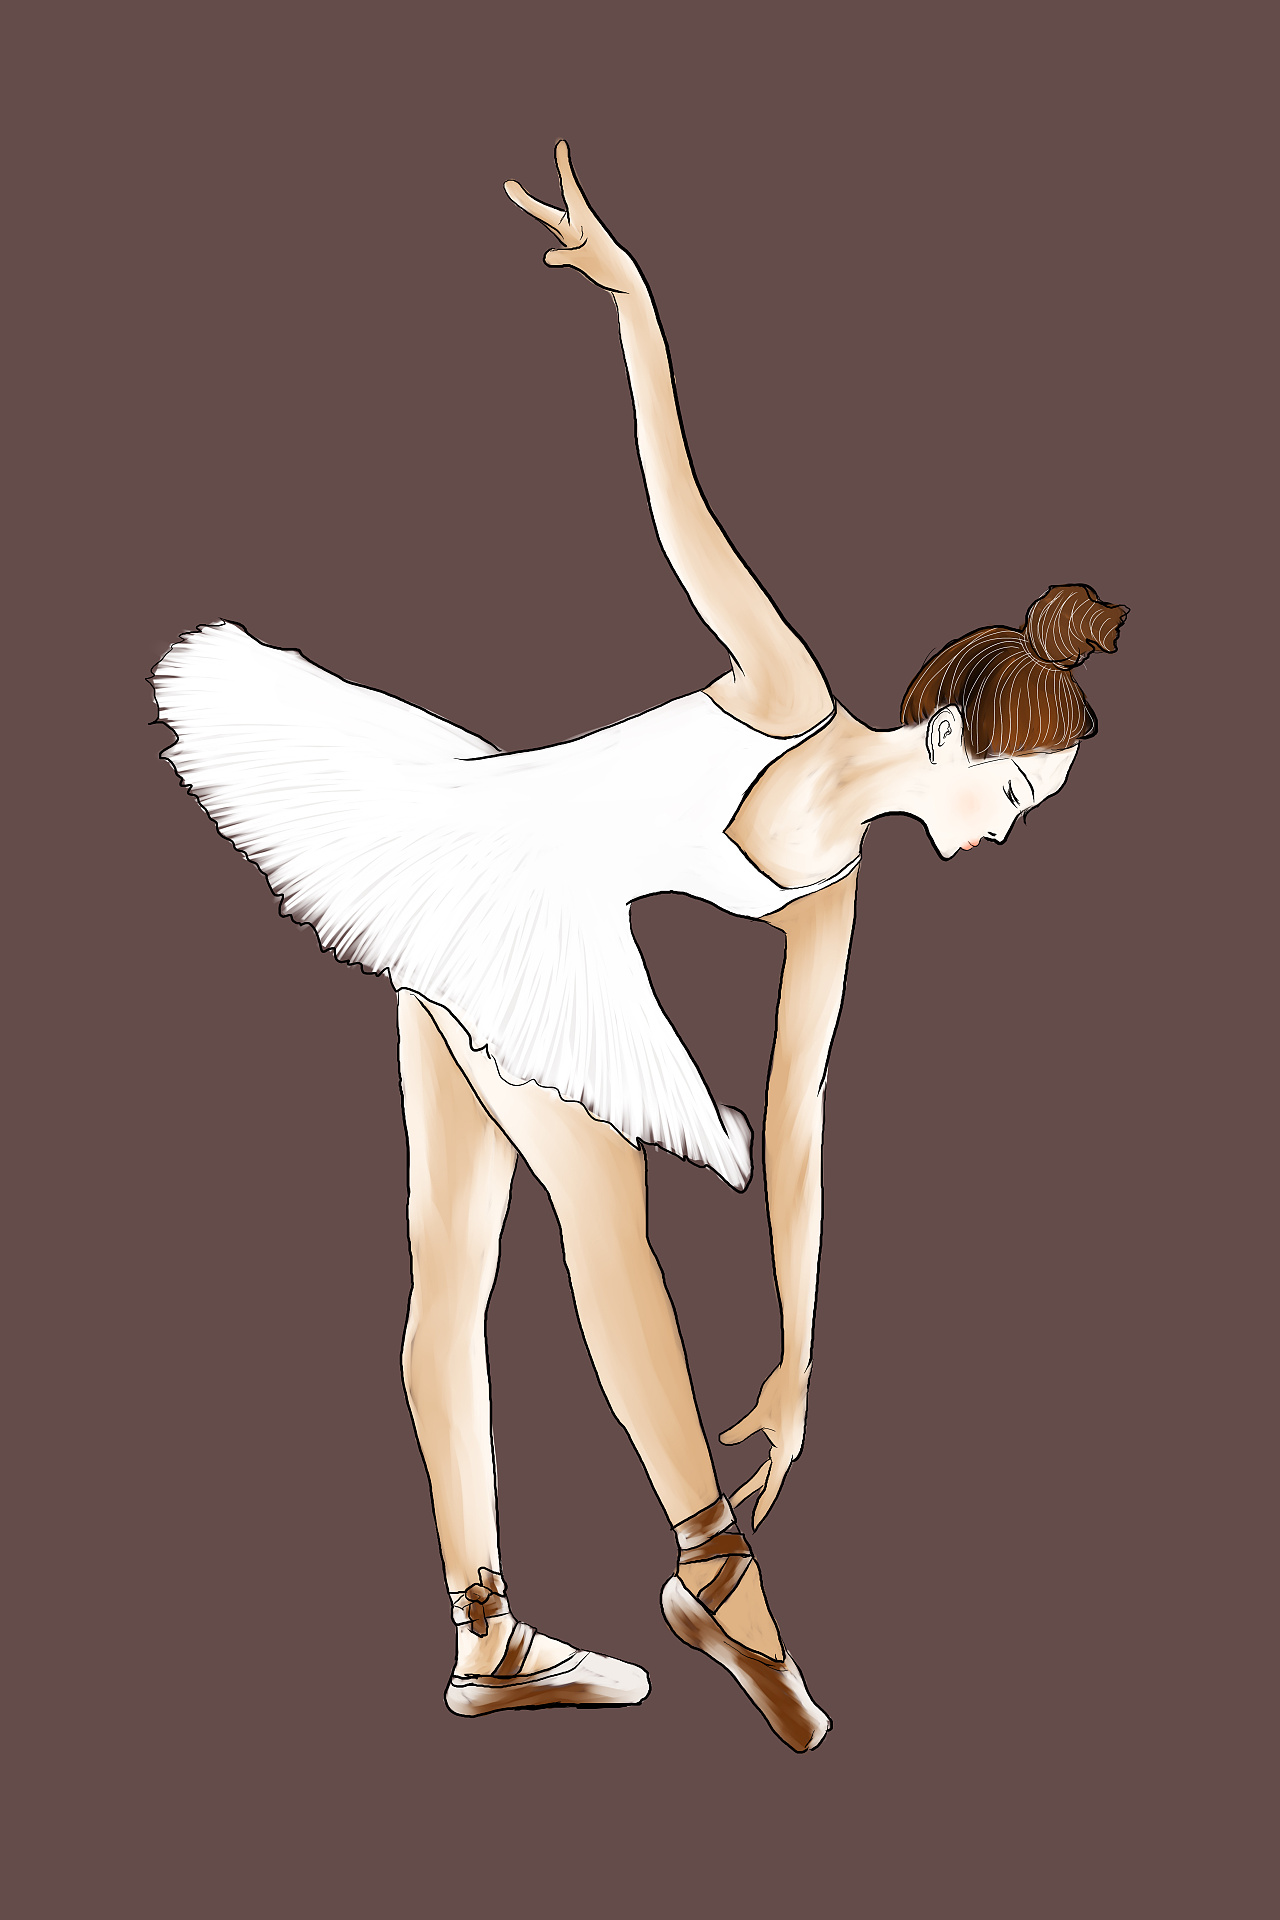 芭蕾舞者怎么画,最漂亮芭蕾舞者简笔画 - 伤感说说吧